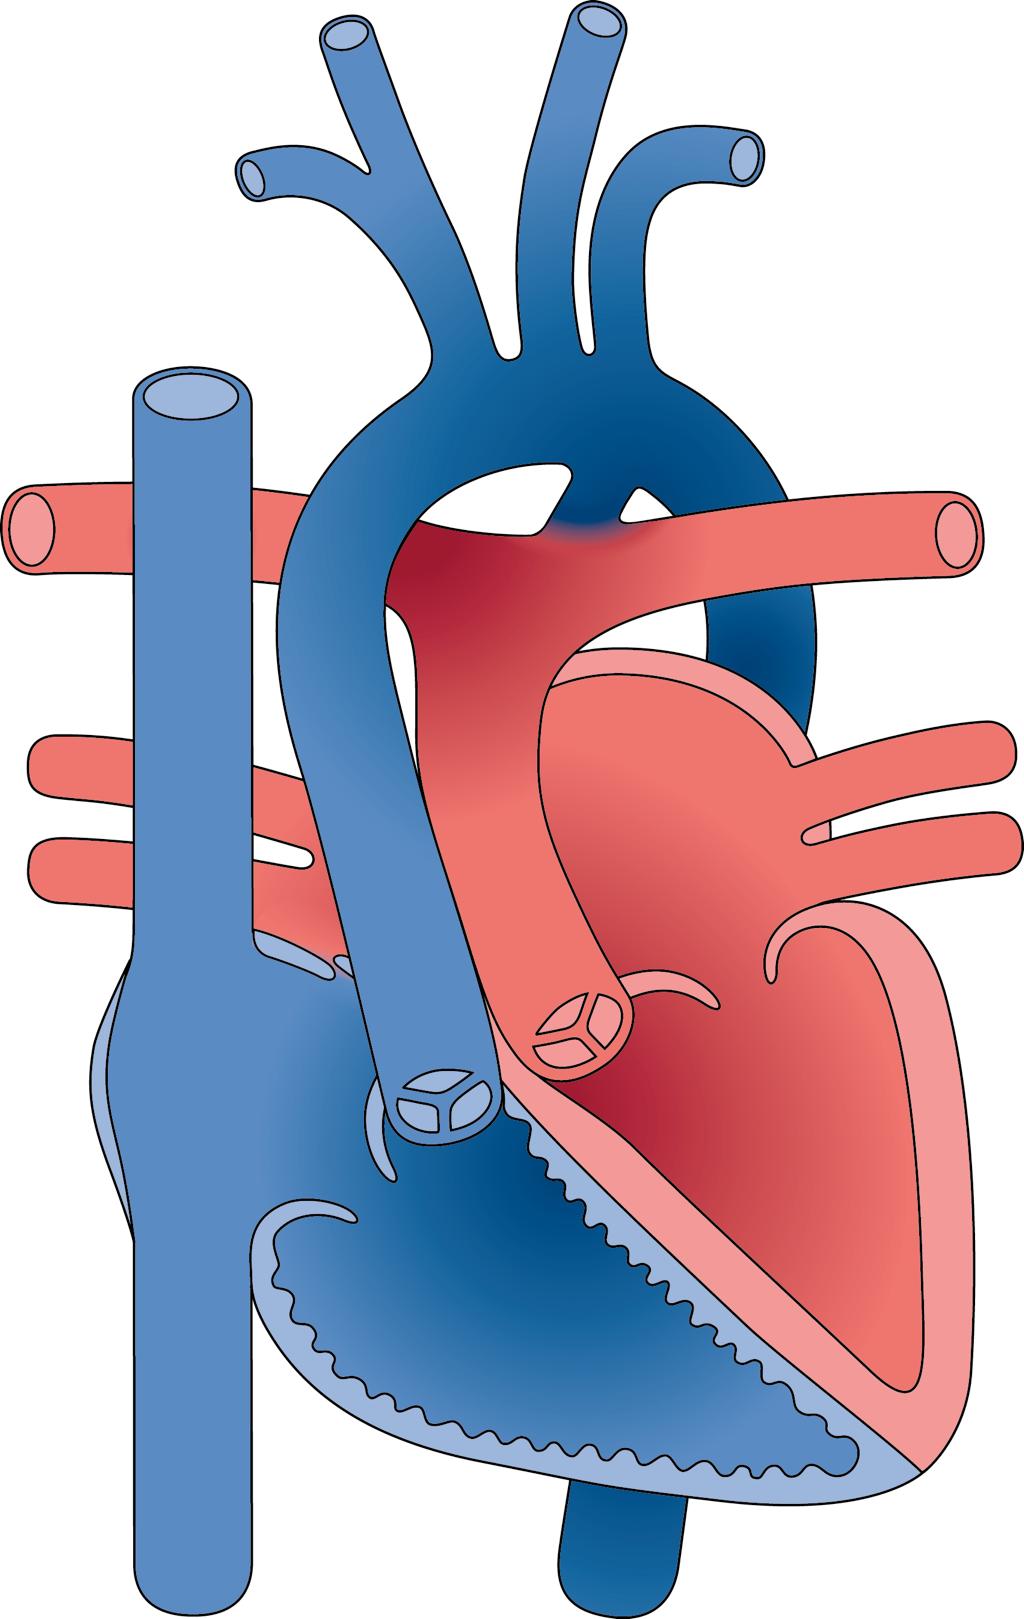 Complex congenital heart